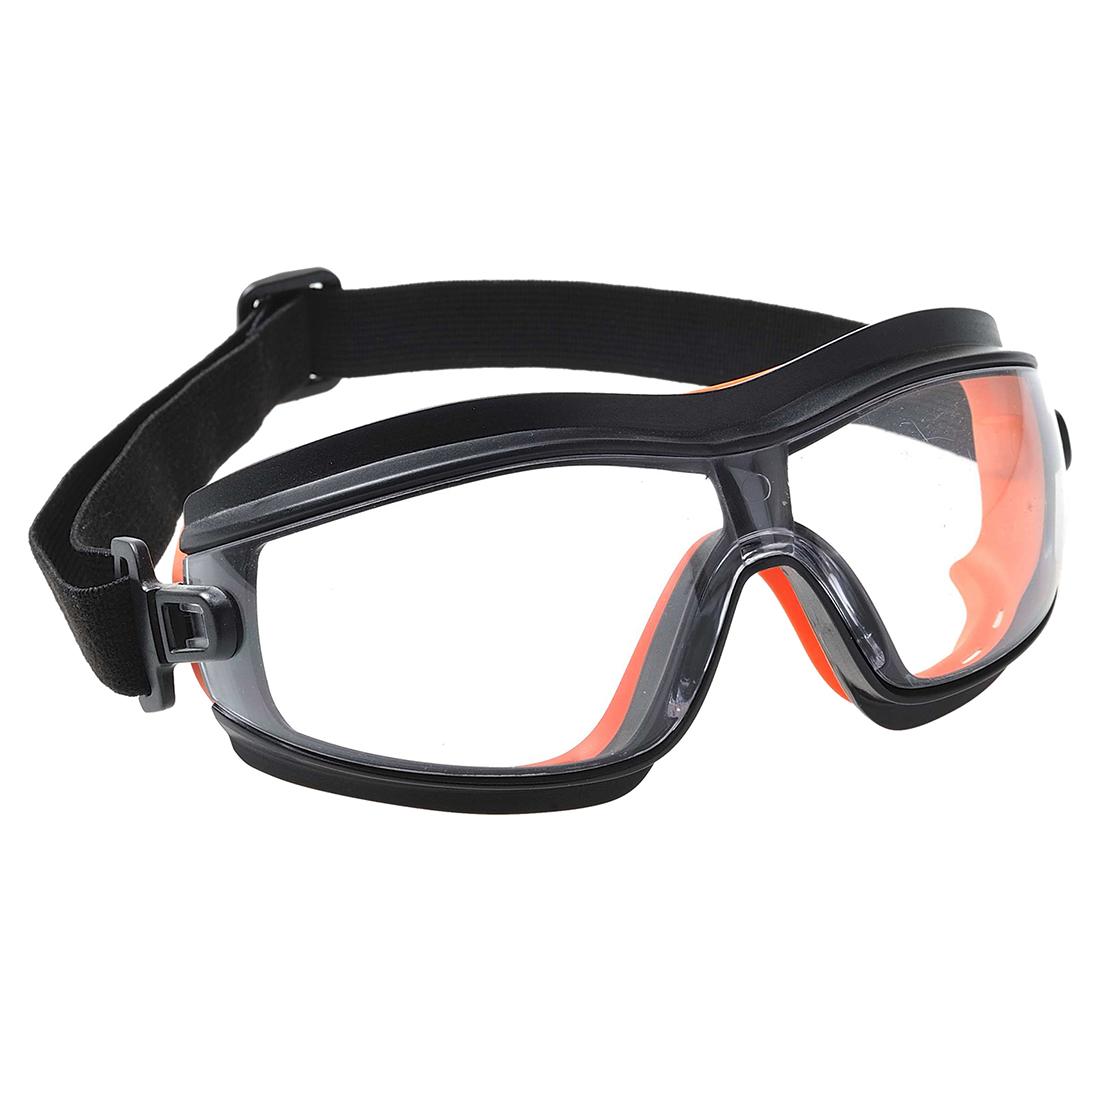 Купить строительные очки. Очки Safety Goggles. Очки защитные "Safety " цв белый. DELTAPLUS en166. Очки защитные очк-001.